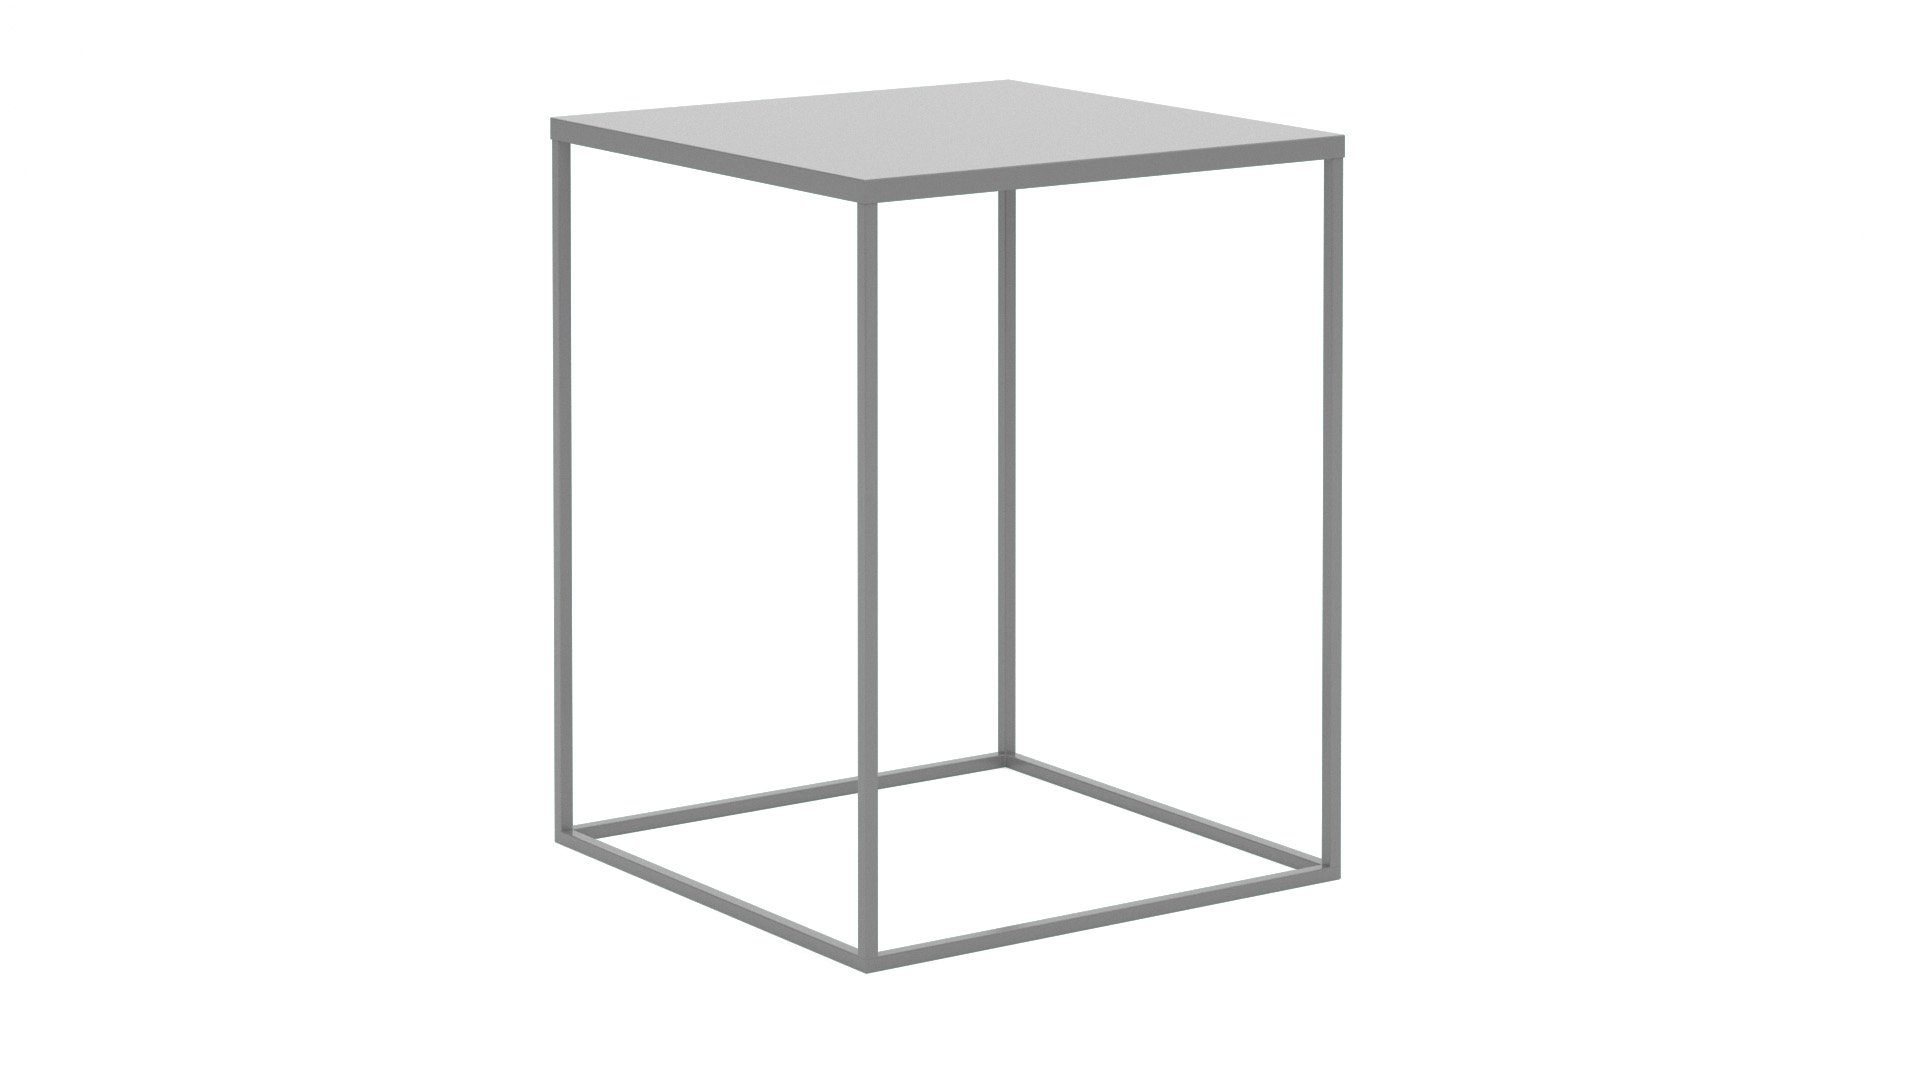 Schlafzimmer - Nachttisch Siblo Metall moderner Grau Ein Nachttisch Diana - Loft-Stil minimalistischer modernes im - Nachttisch